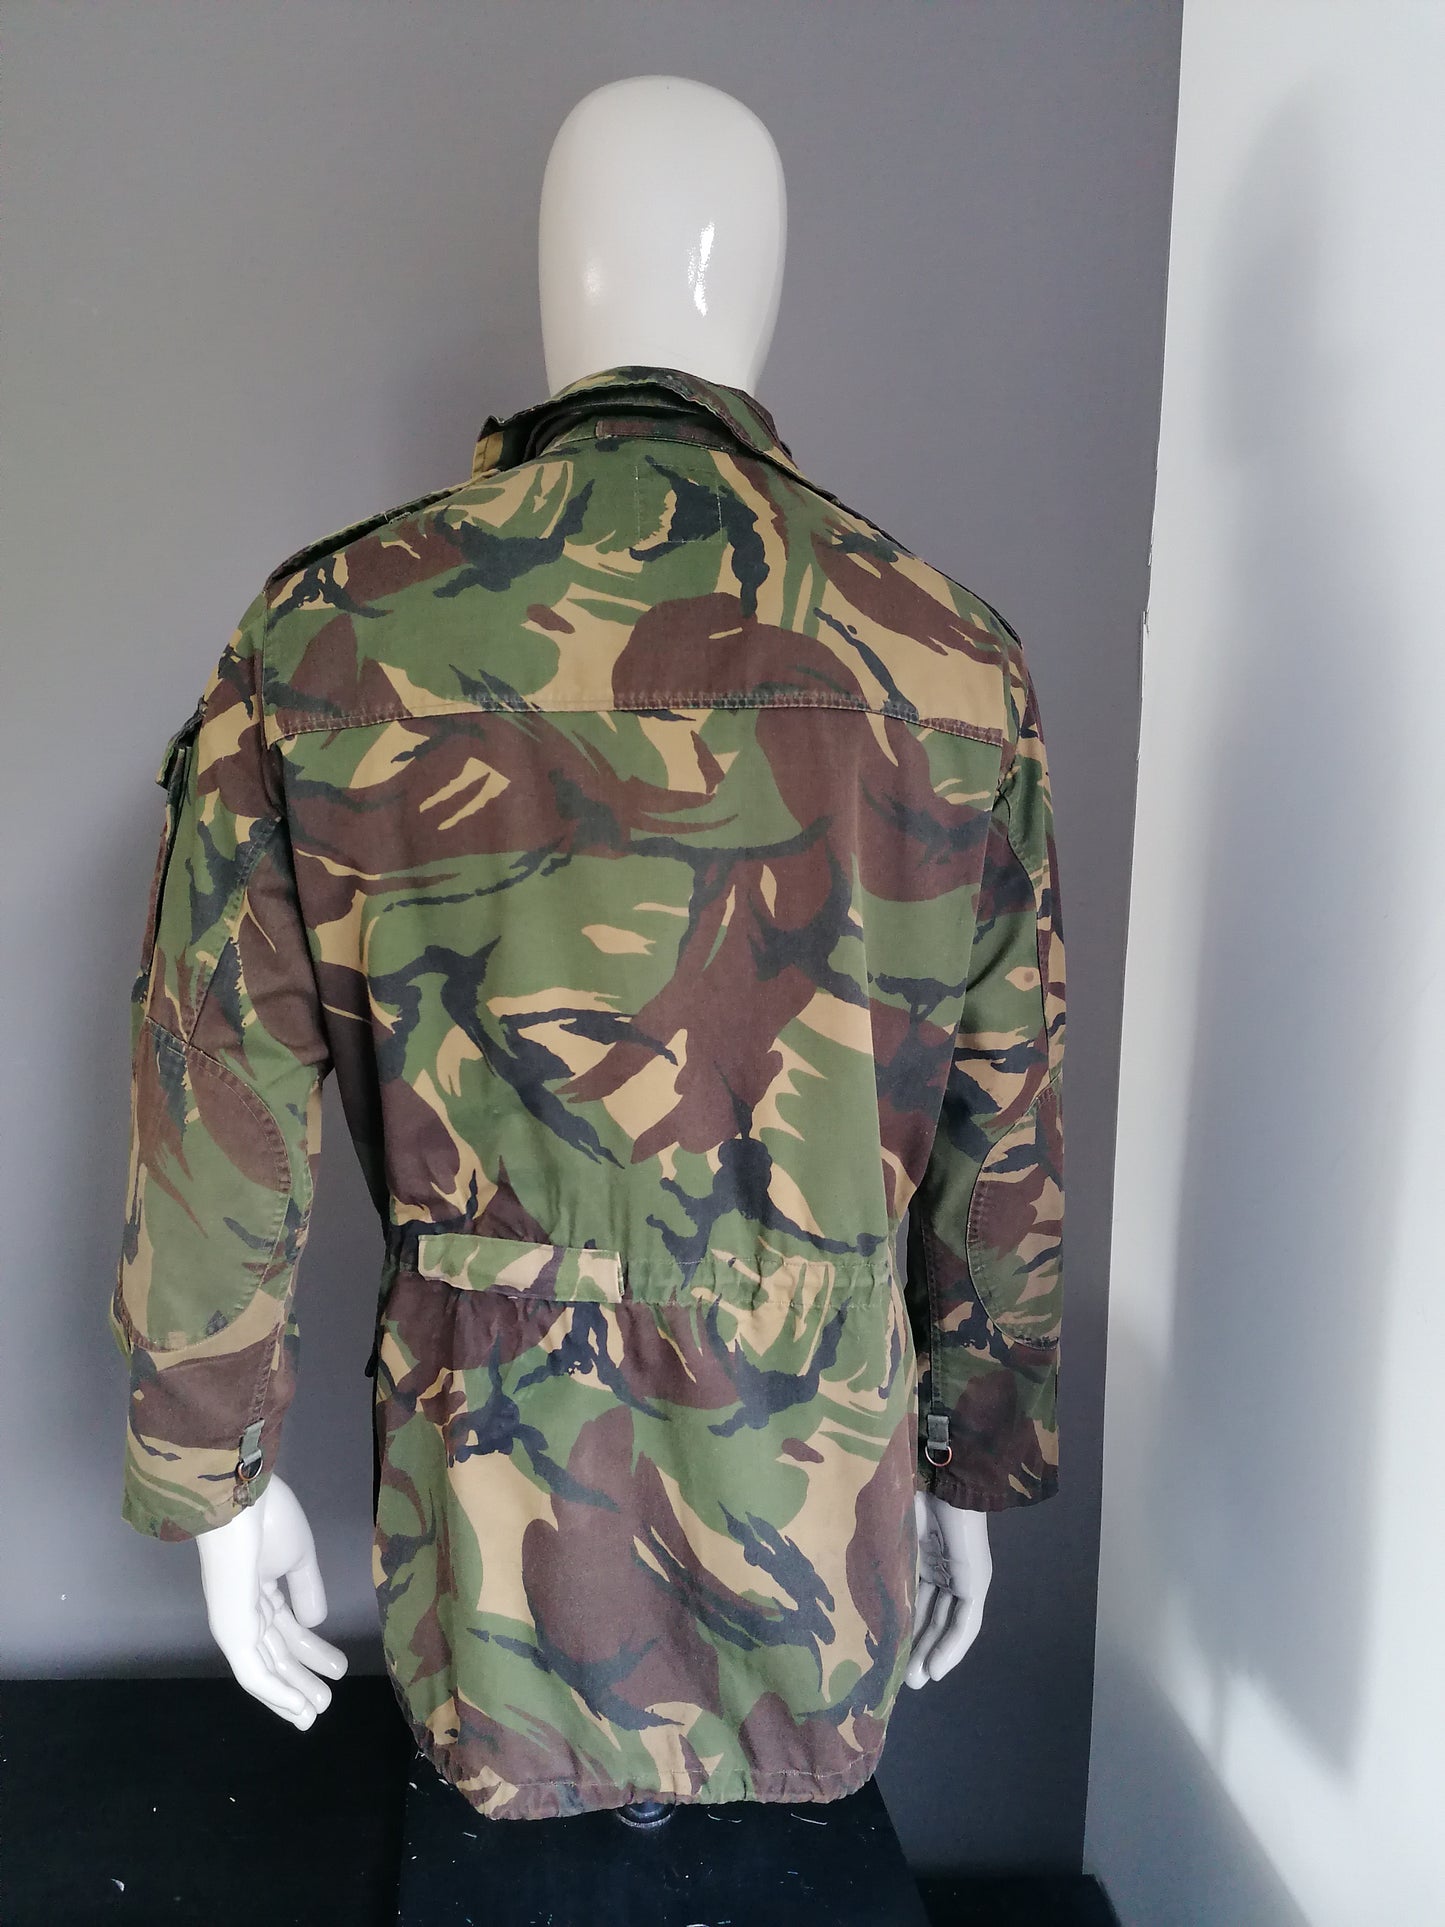 Vintage ejército / ejército chaqueta incondicional. Cierre doble. Impresión de camuflaje verde. Tamaño M / L. Original